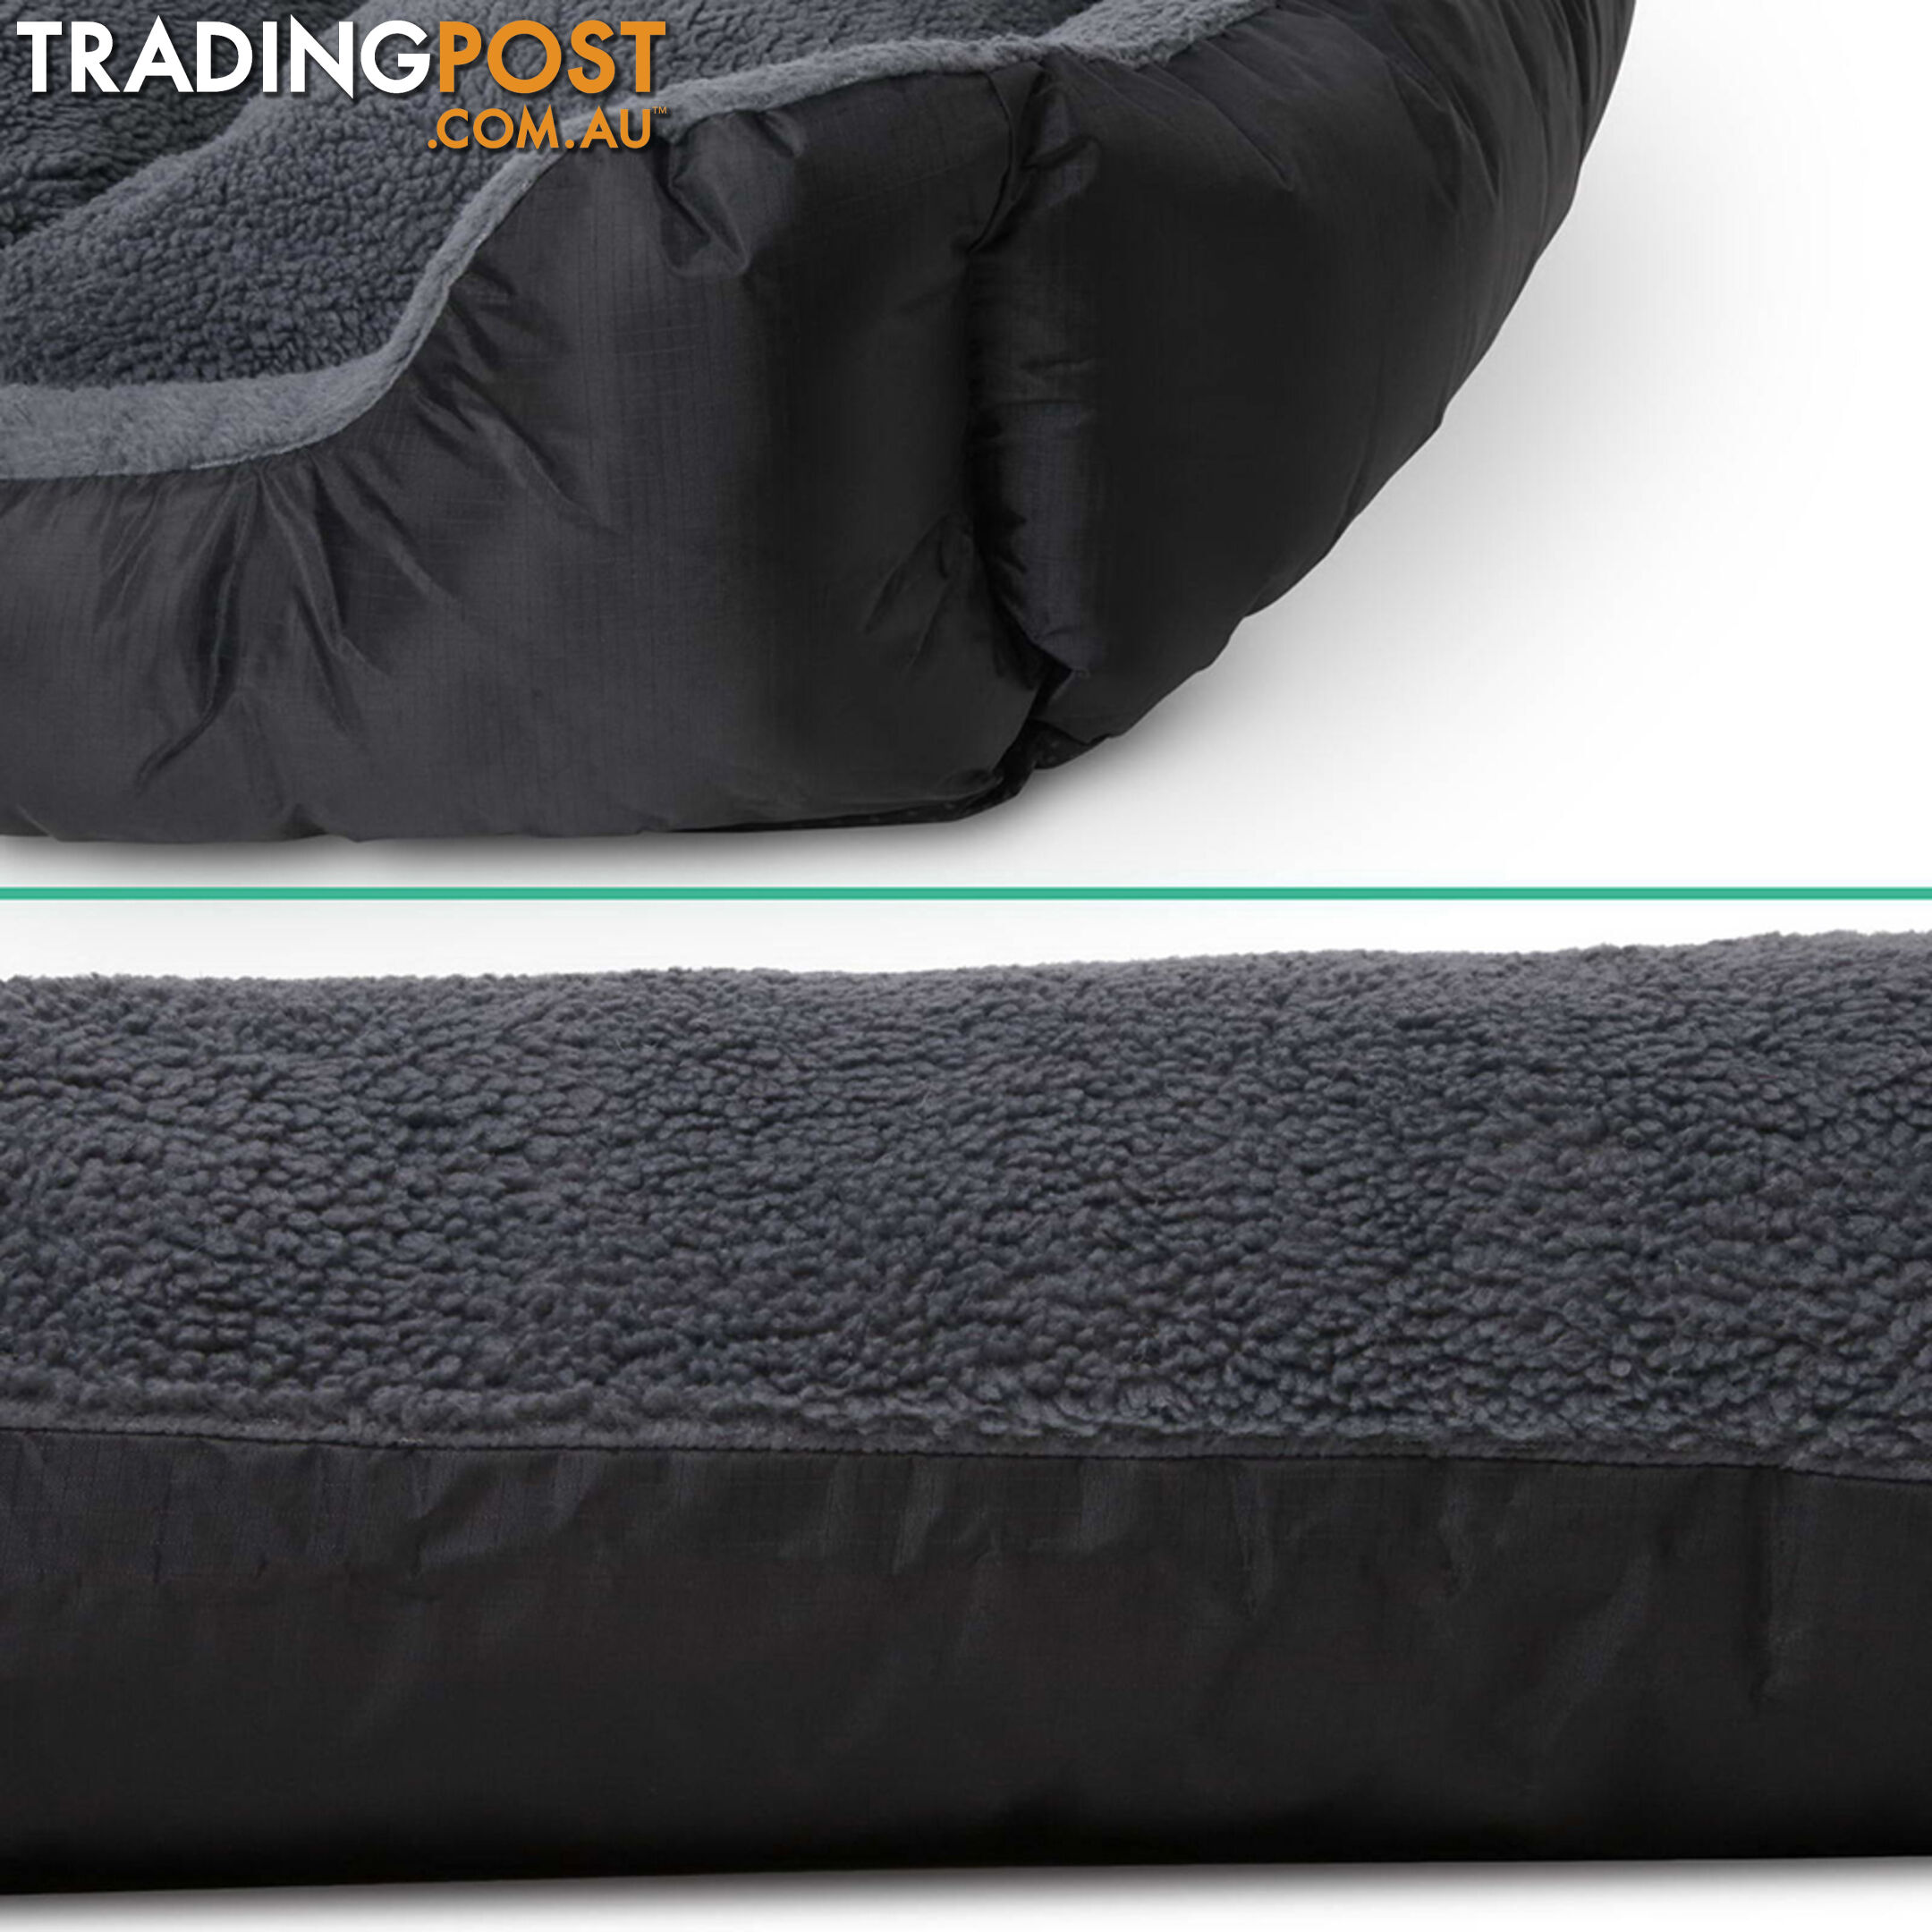 Waterproof Fleece Lined Dog Bed - XXLarge